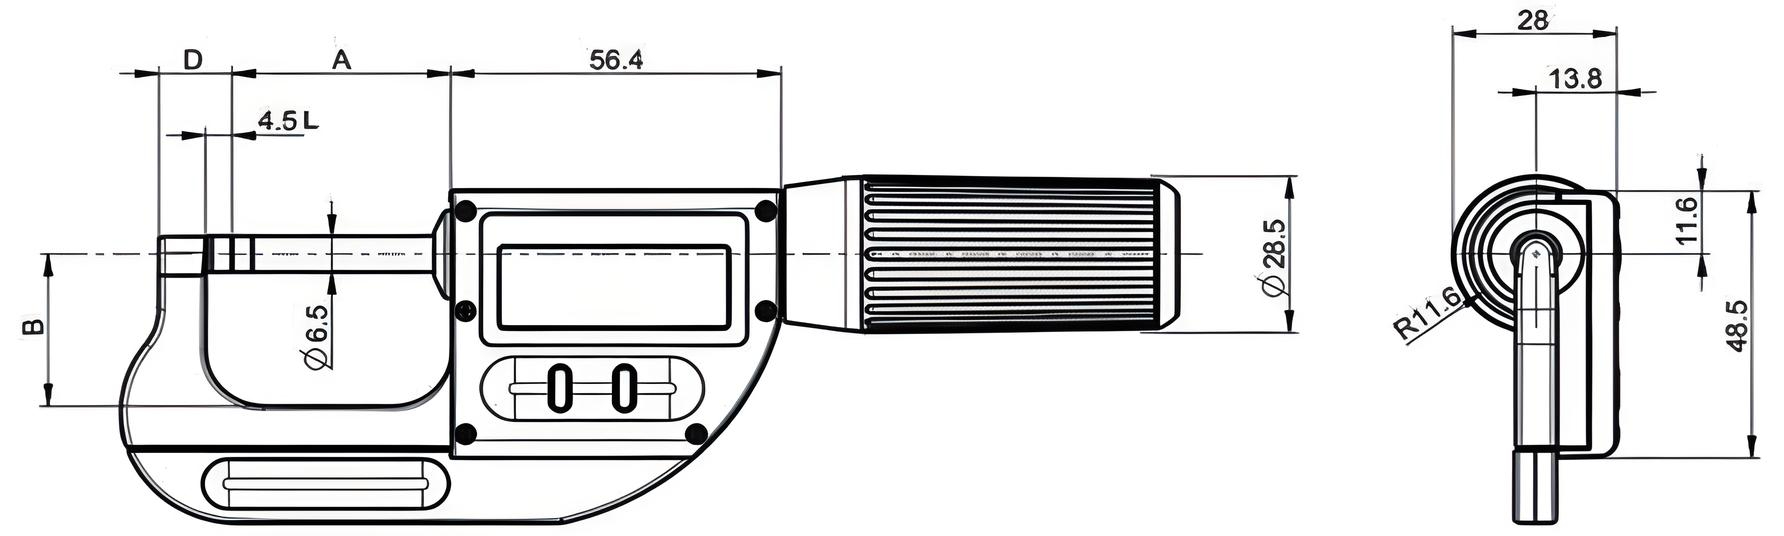 Bộ 3 panme điện tử Sylvac 230188, 0 – 102mm, cấp bảo vệ IP 67